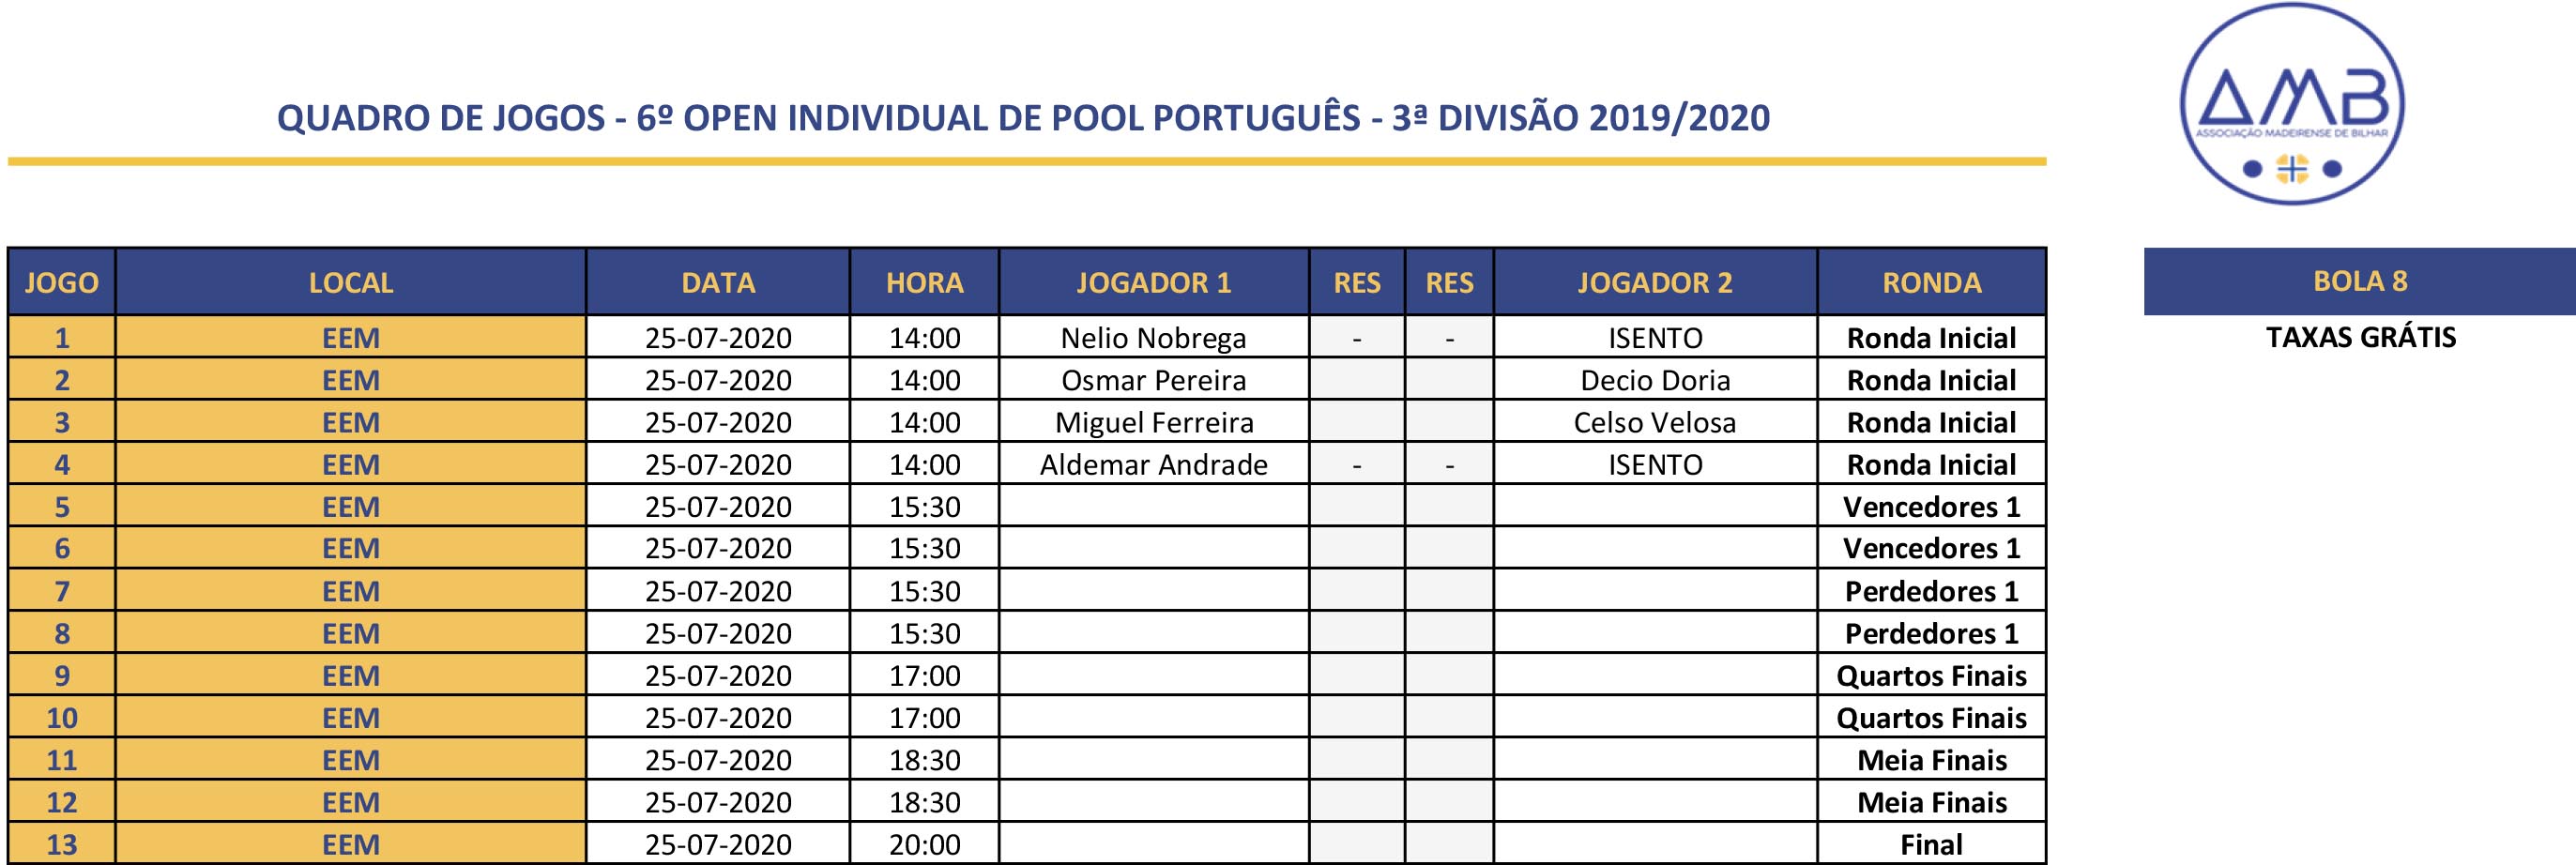 6º Open Individual de POOL PORTUGUÊS MASCULINO 2019-2020 - 3ª Divisão Quadro